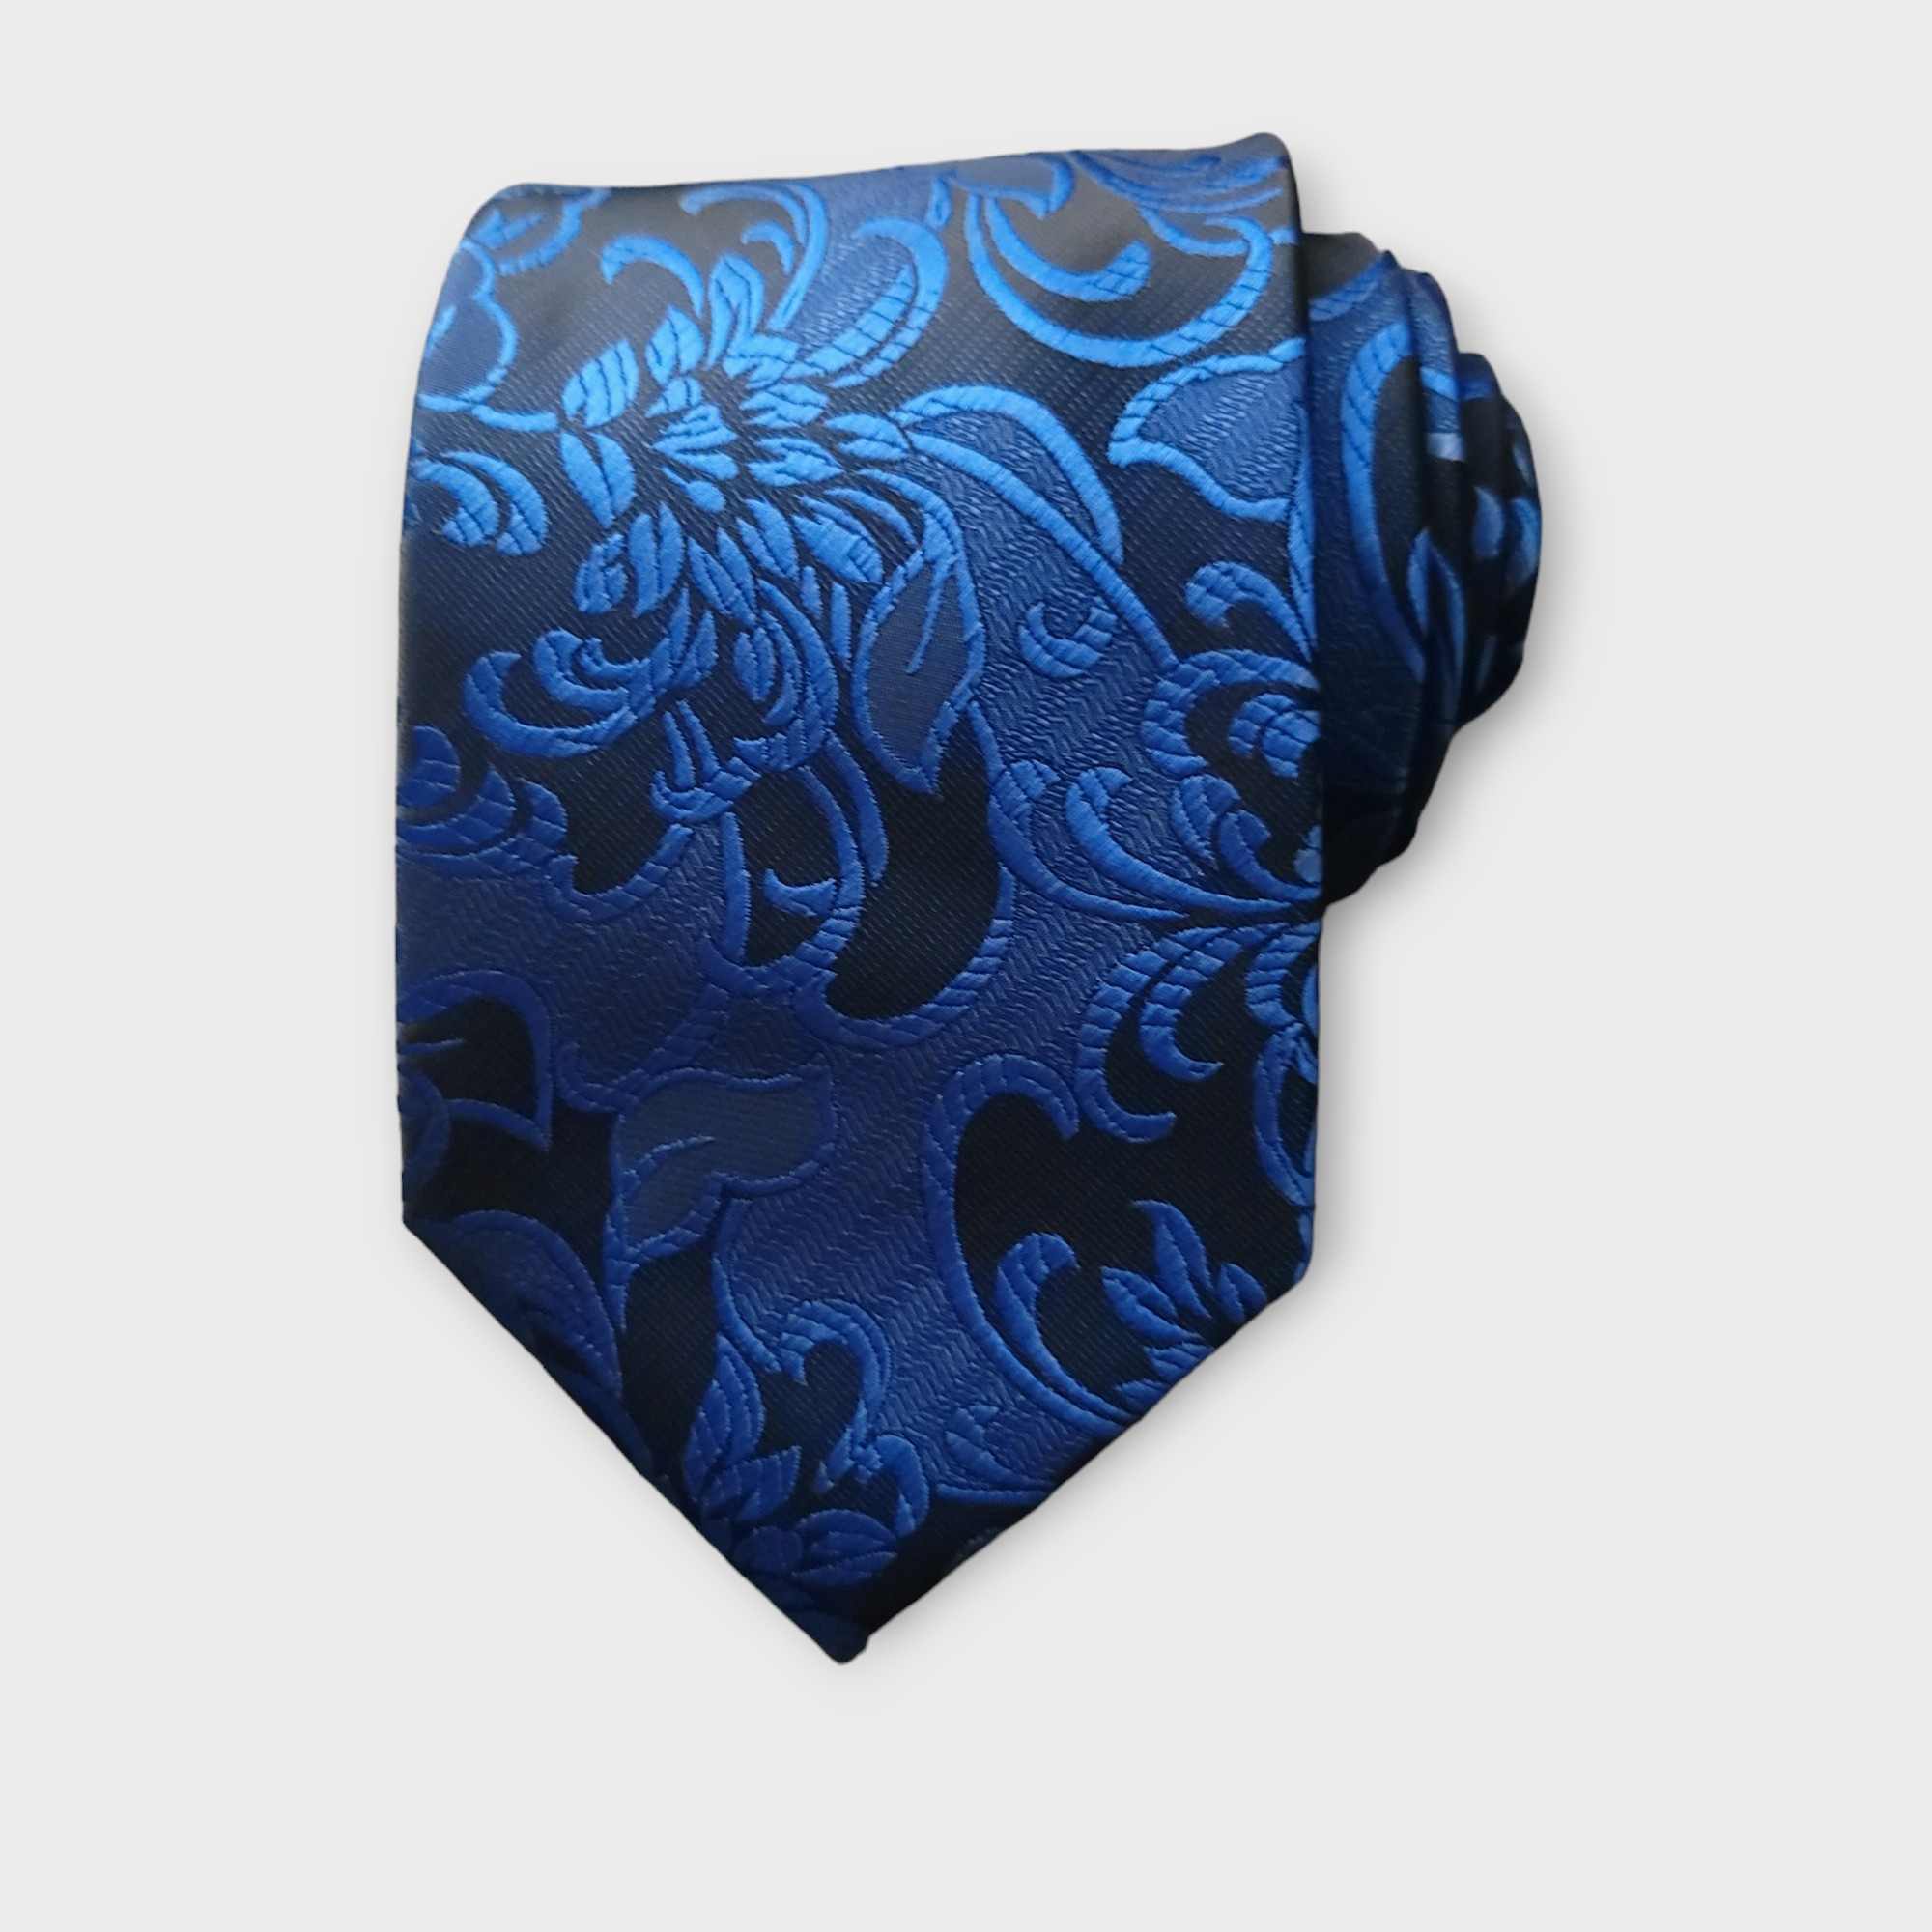 Sapphire Blue Floral Silk Tie Pocket Square Cufflink Set